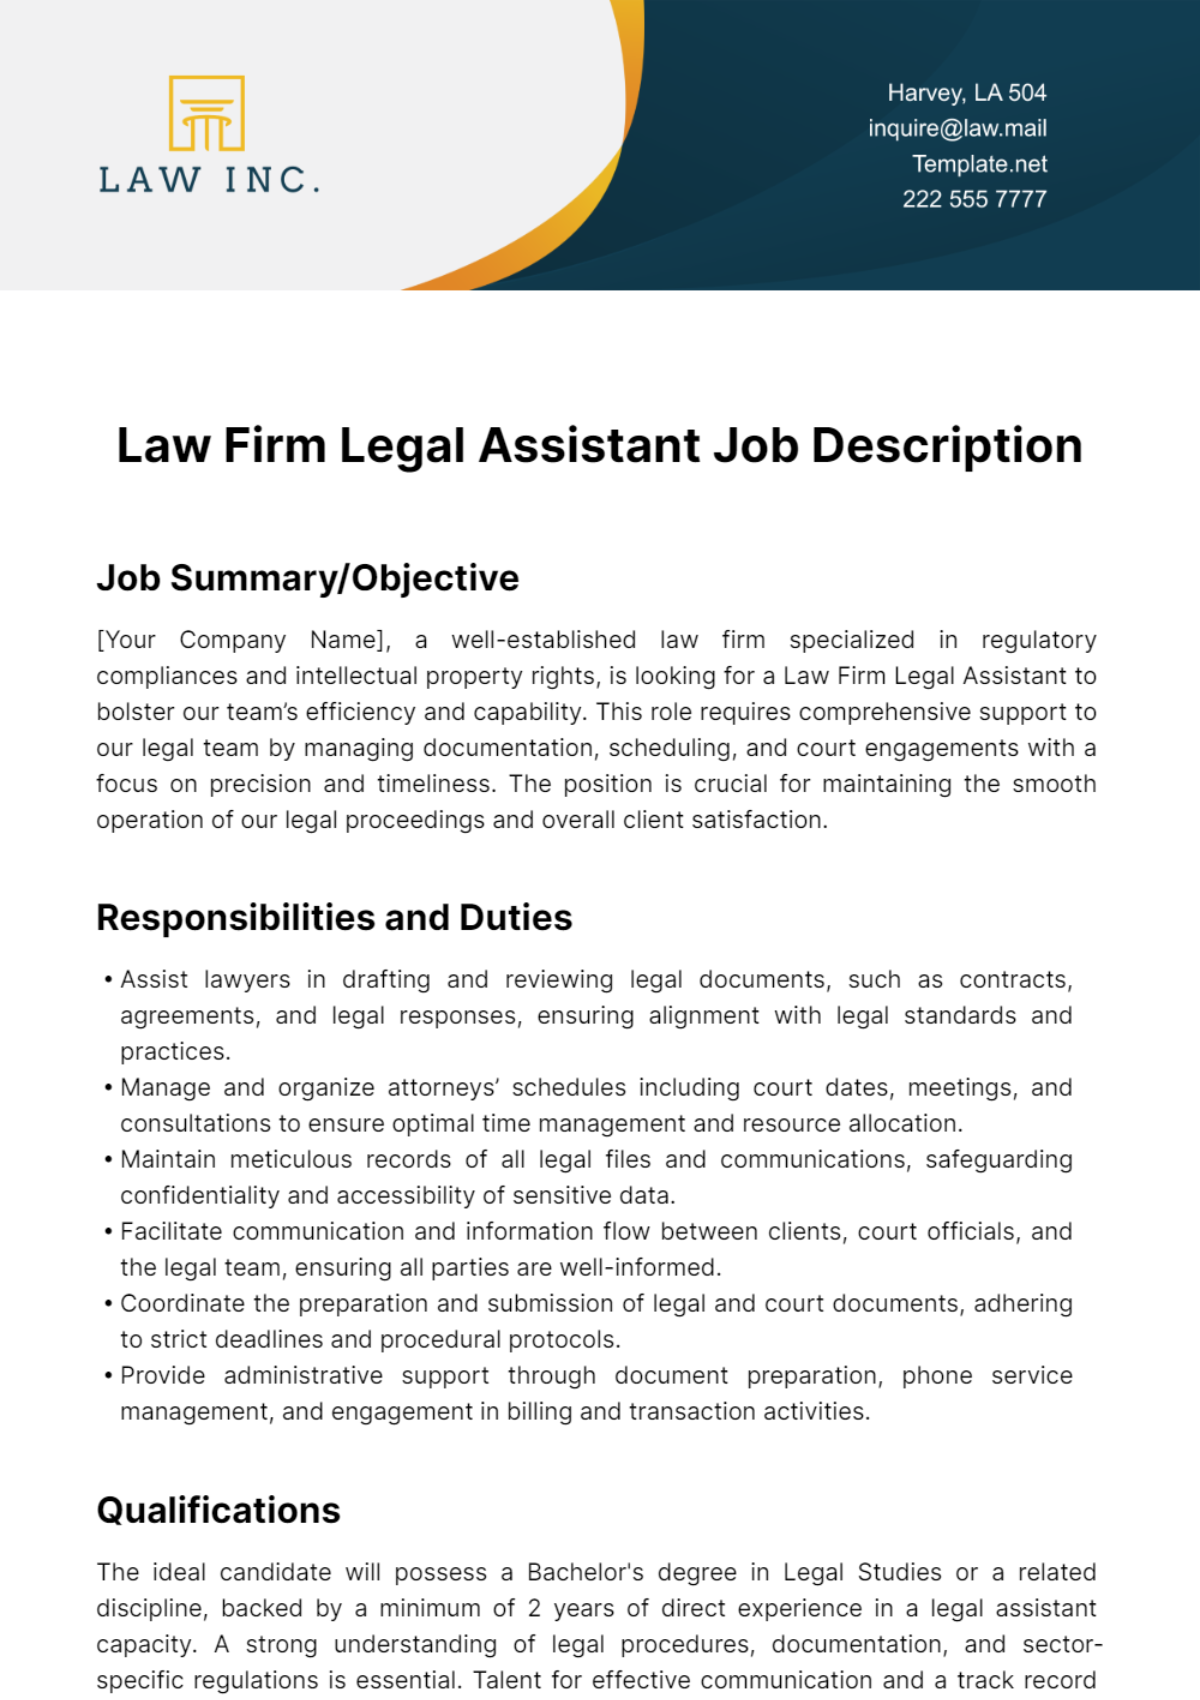 Free Law Firm Legal Assistant Job Description Template